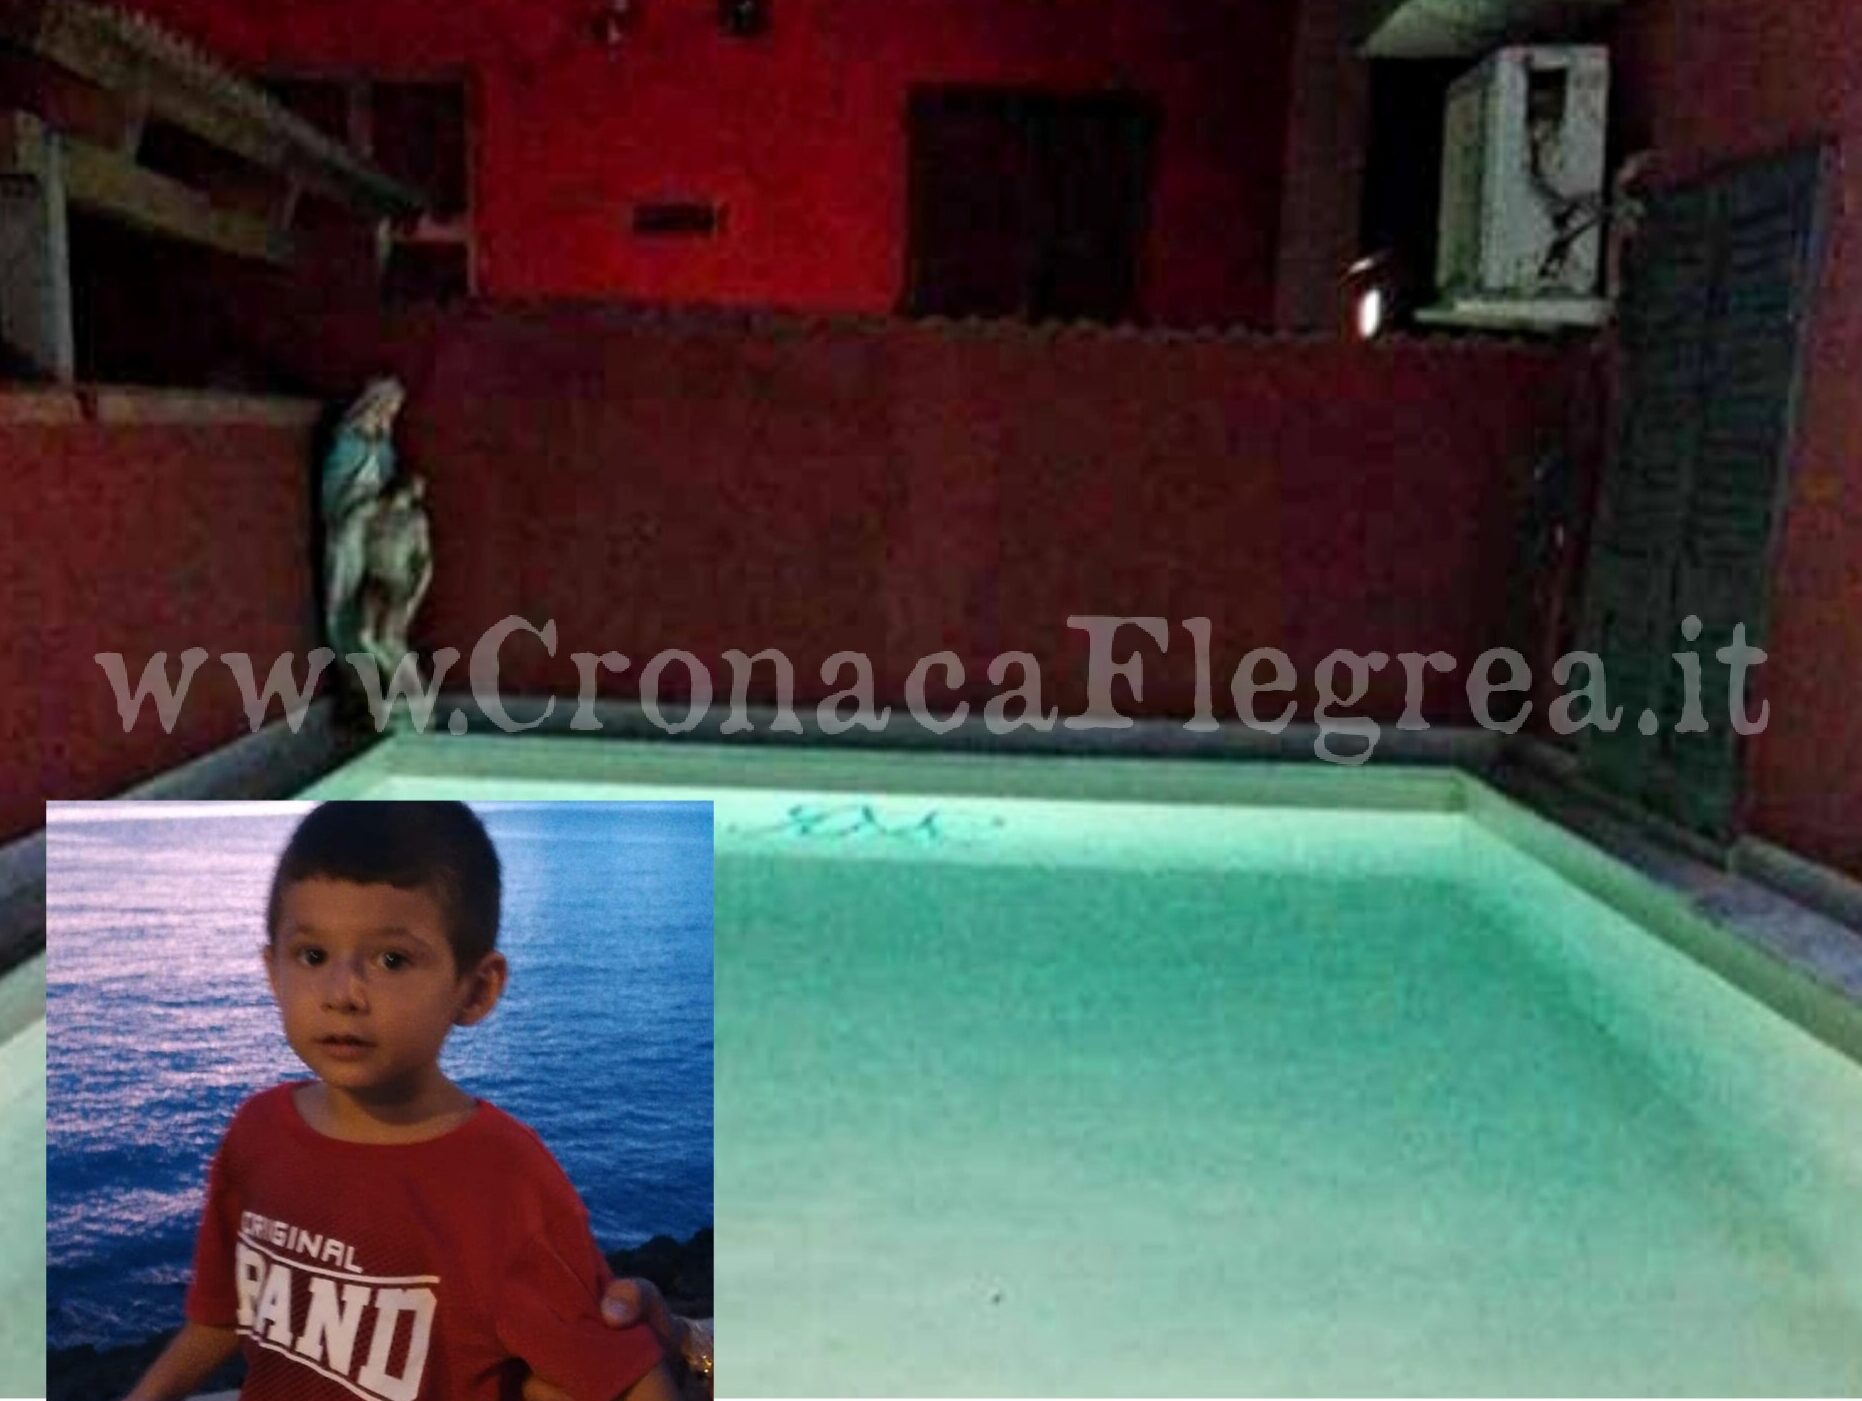 La piscina della tragedia: due passi e il piccolo Anthony è annegato. Si indaga per omicidio colposo – LE FOTO